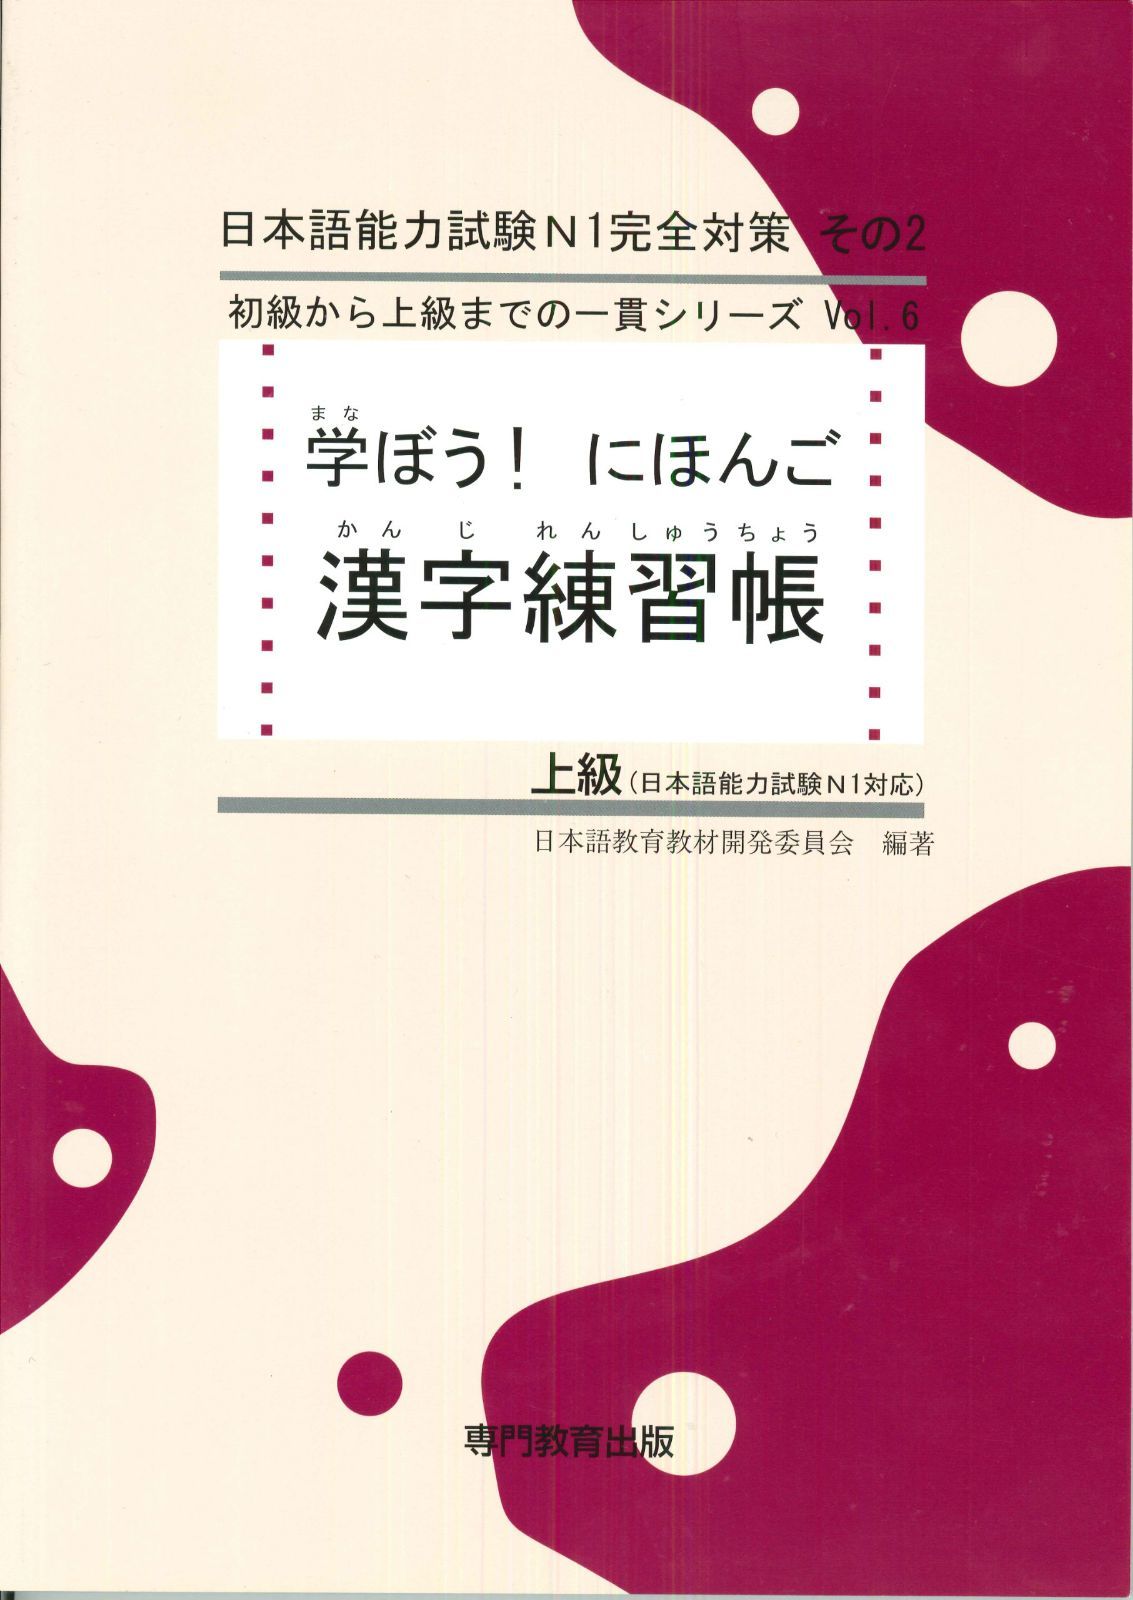 学ぼう! にほんご 上級 漢字練習帳 (日本語能力試験N1/日本語NAT-TEST1級対応) - メルカリ